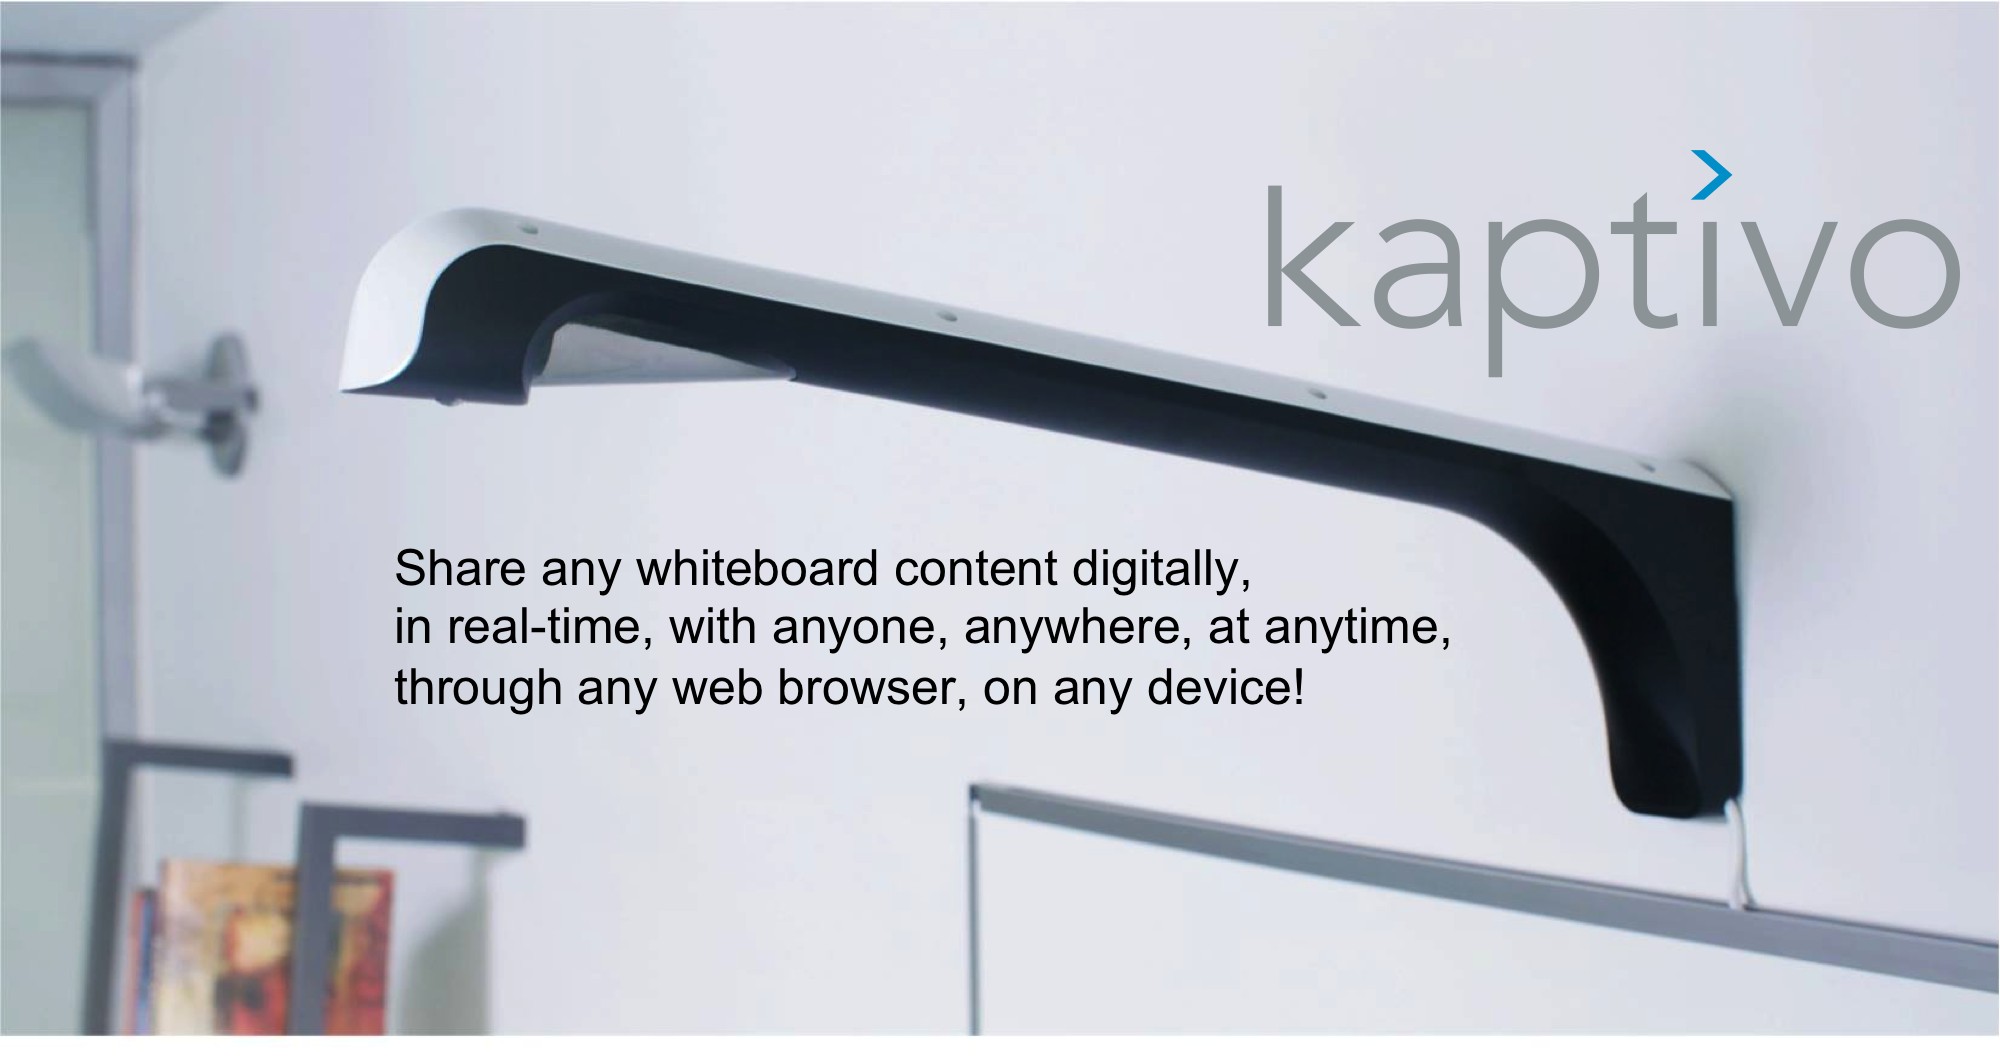 Kaptivo es parte de Lifesize y complementa las pizarras blancas con las videoconferencias